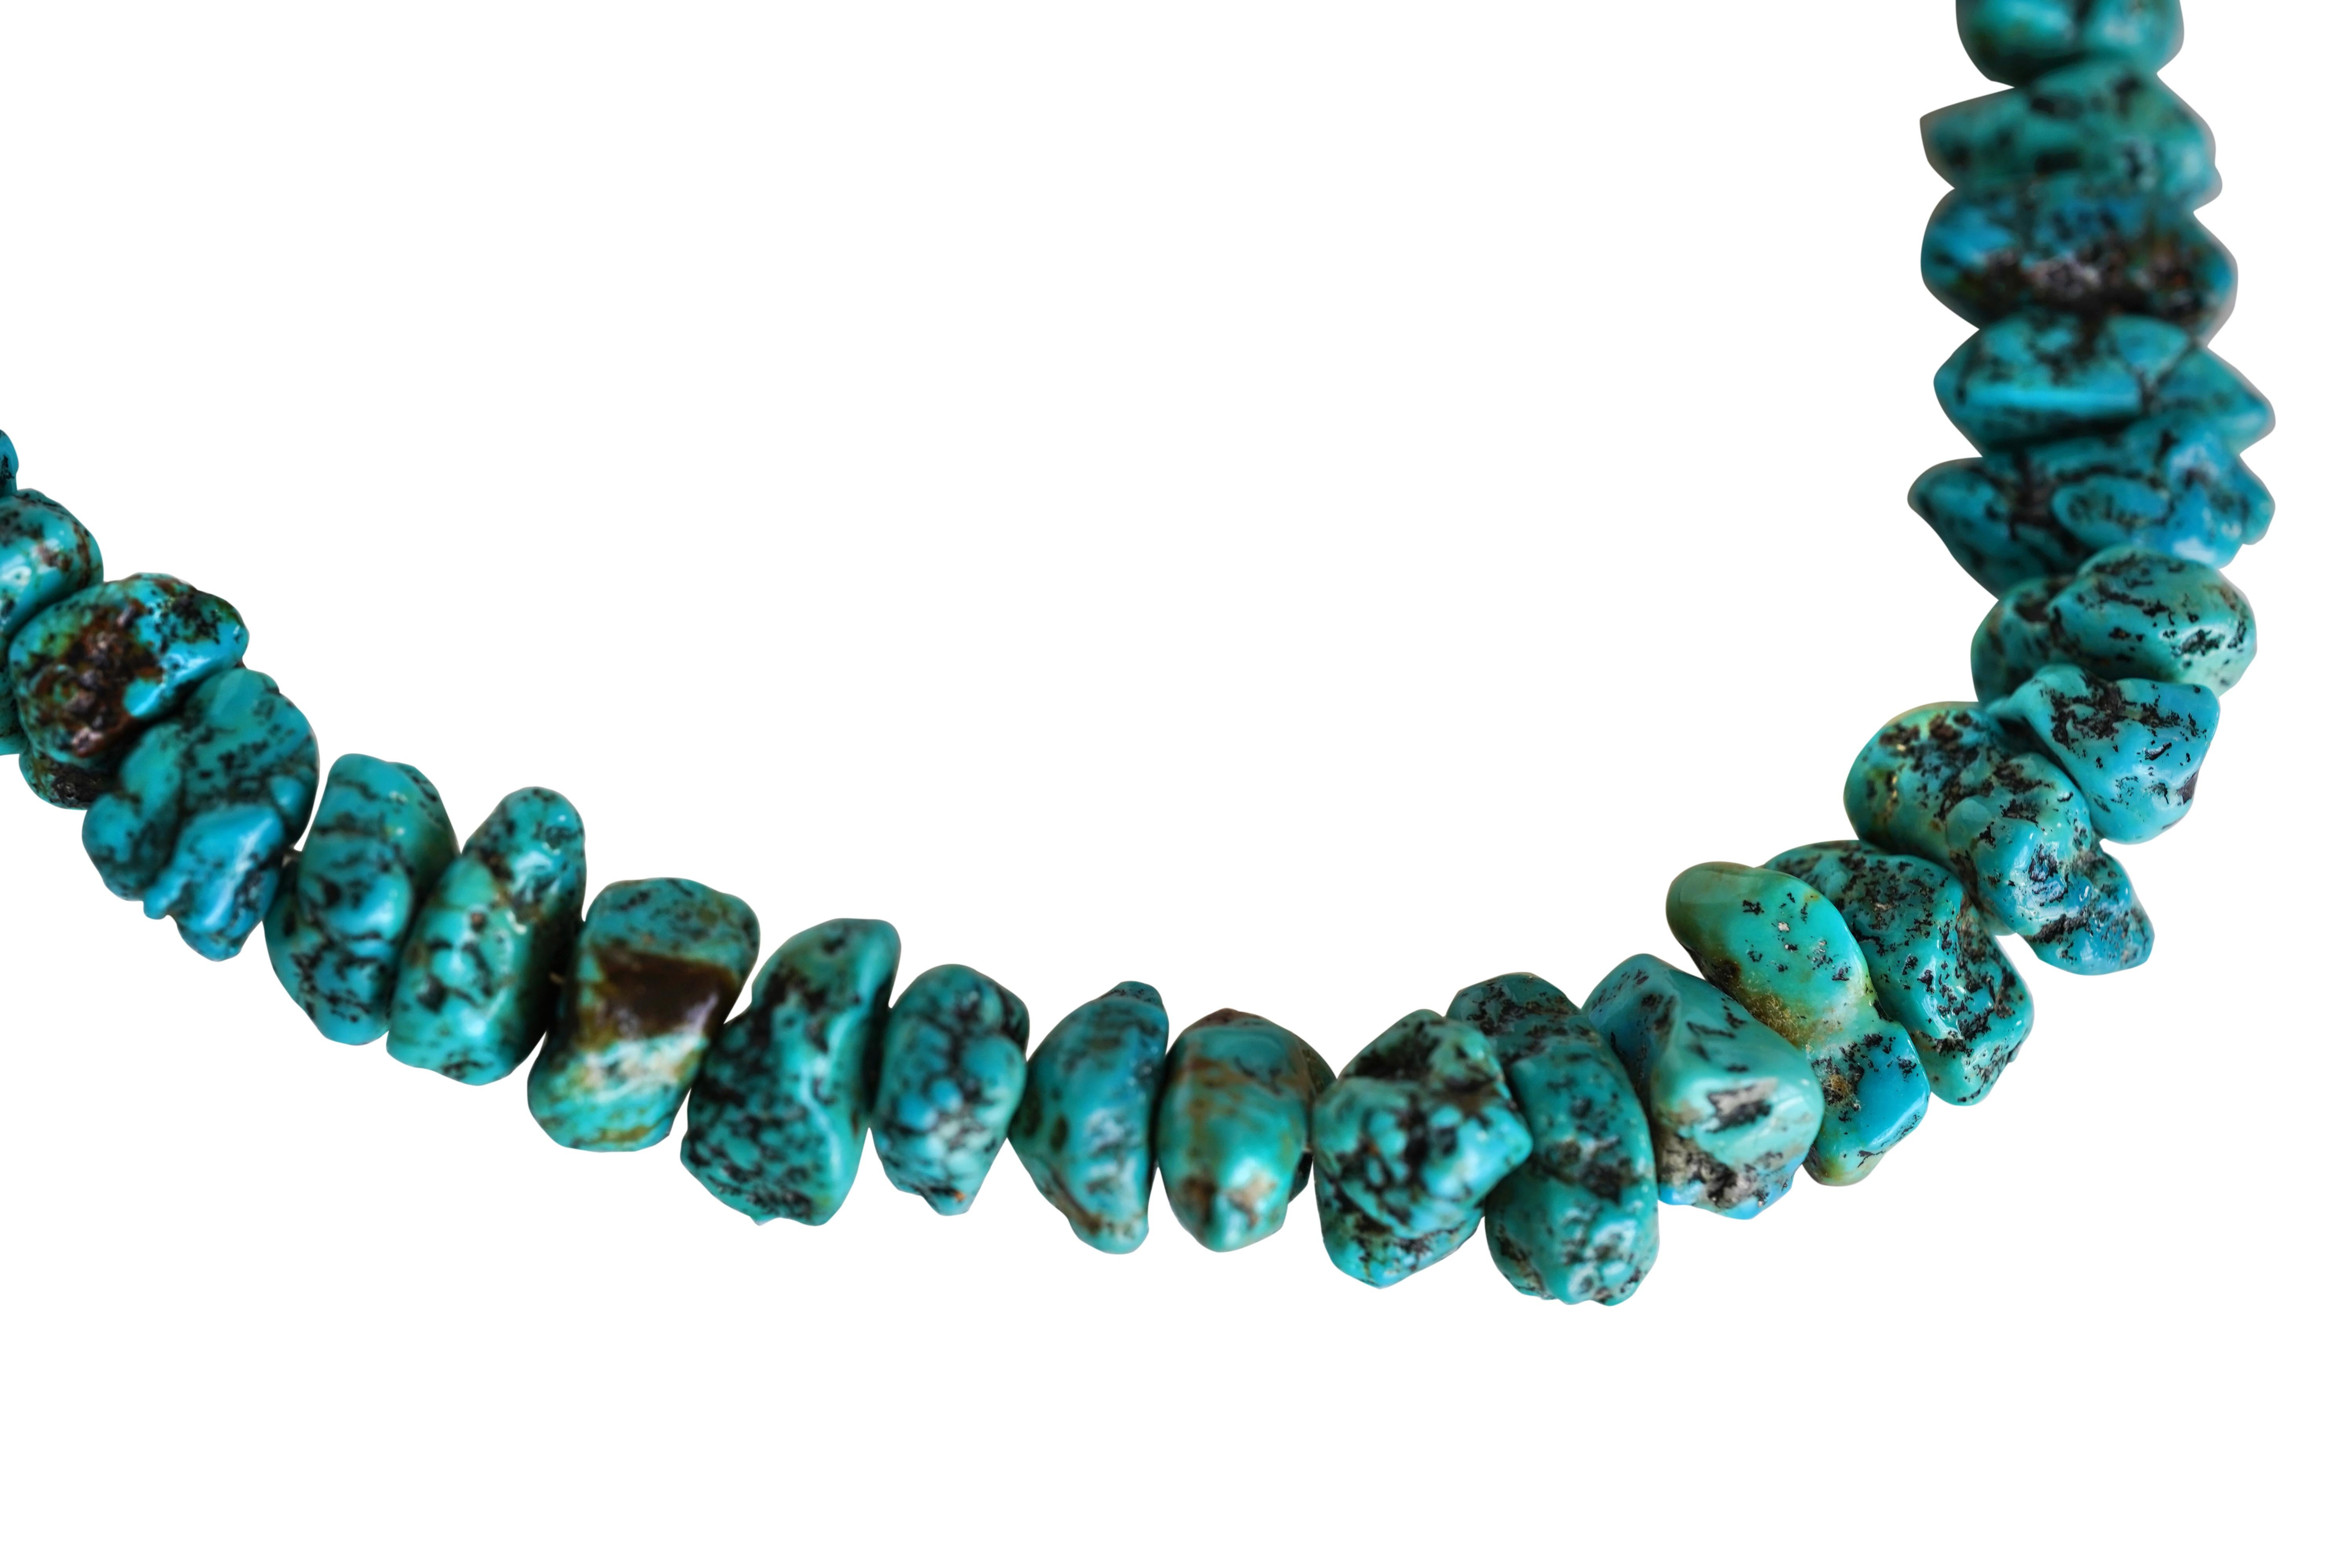 Le collier est composé de 60 turquoises naturelles. Chaque turquoise est unique par sa forme et sa couleur.
Longueur du collier : 28.9 inches/73.4 cm.
Dimensions de la turquoise : la plus grande pierre mesure 19,2 mm de long, 13,7 mm de large et